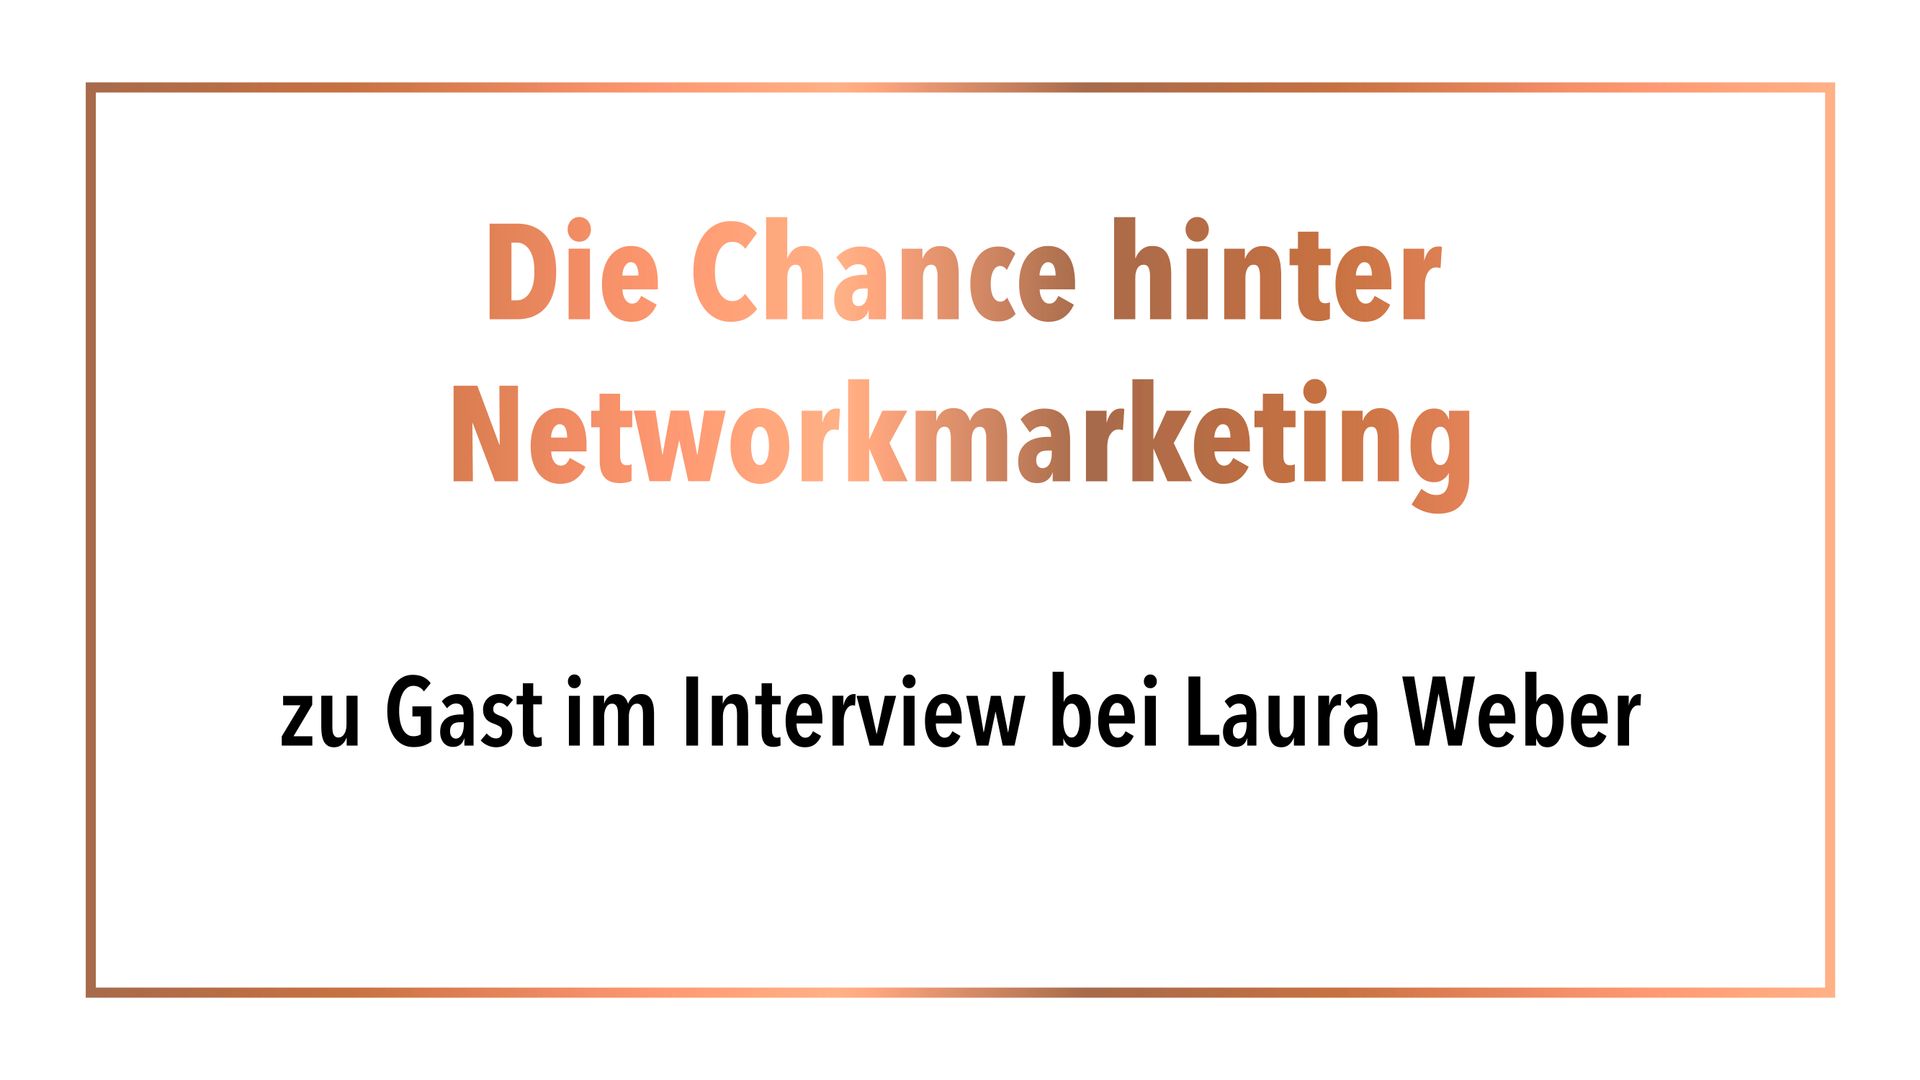 Die Chance hinter Network marketing zu Gast im Interview bei Laura Weber